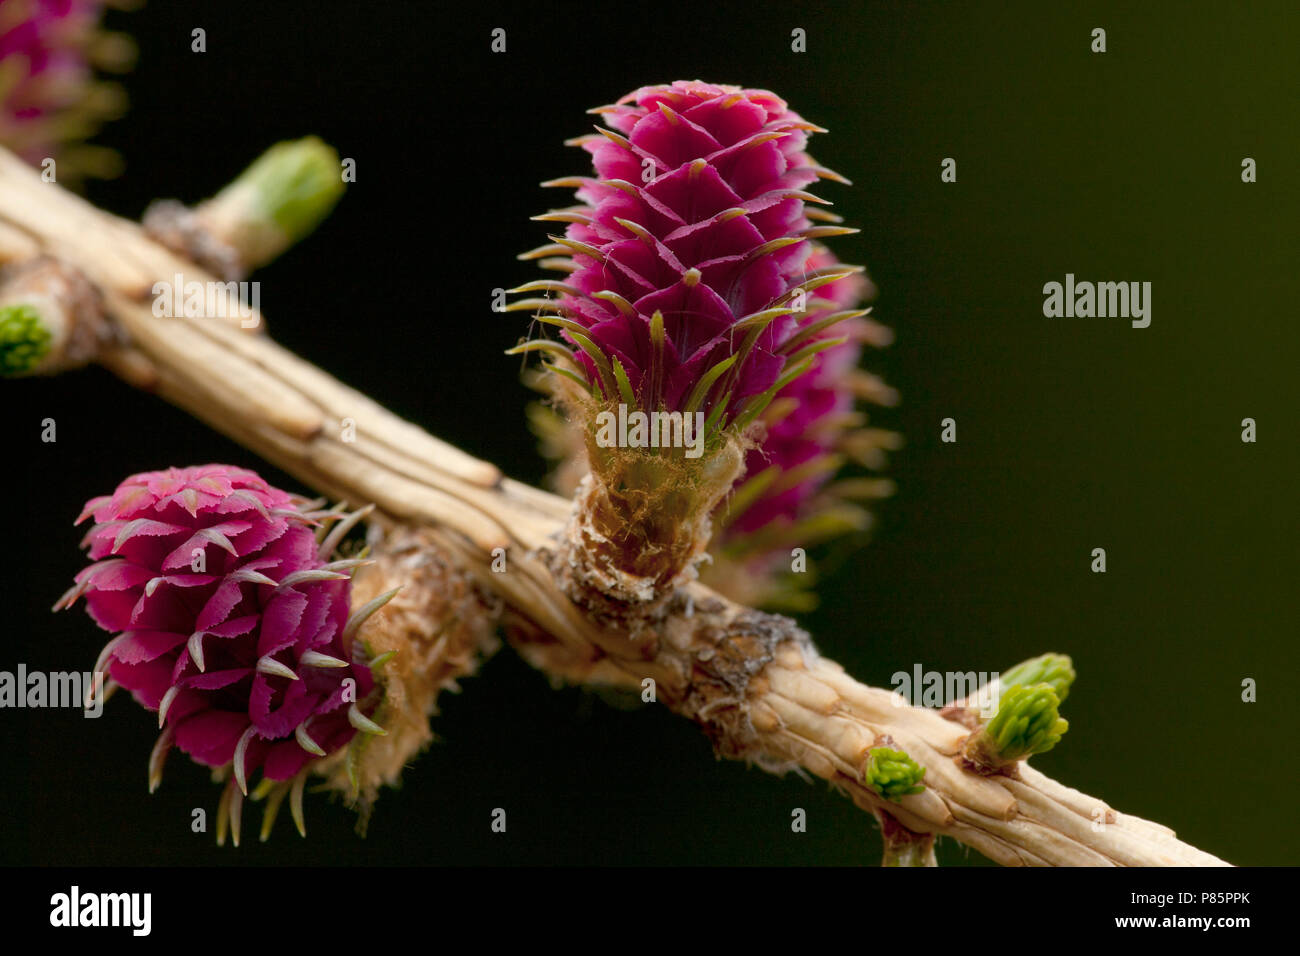 Vrouwelijke bloeiwijzen van de Europese lariks, weibliche Blüten der europäischen Lärche Stockfoto